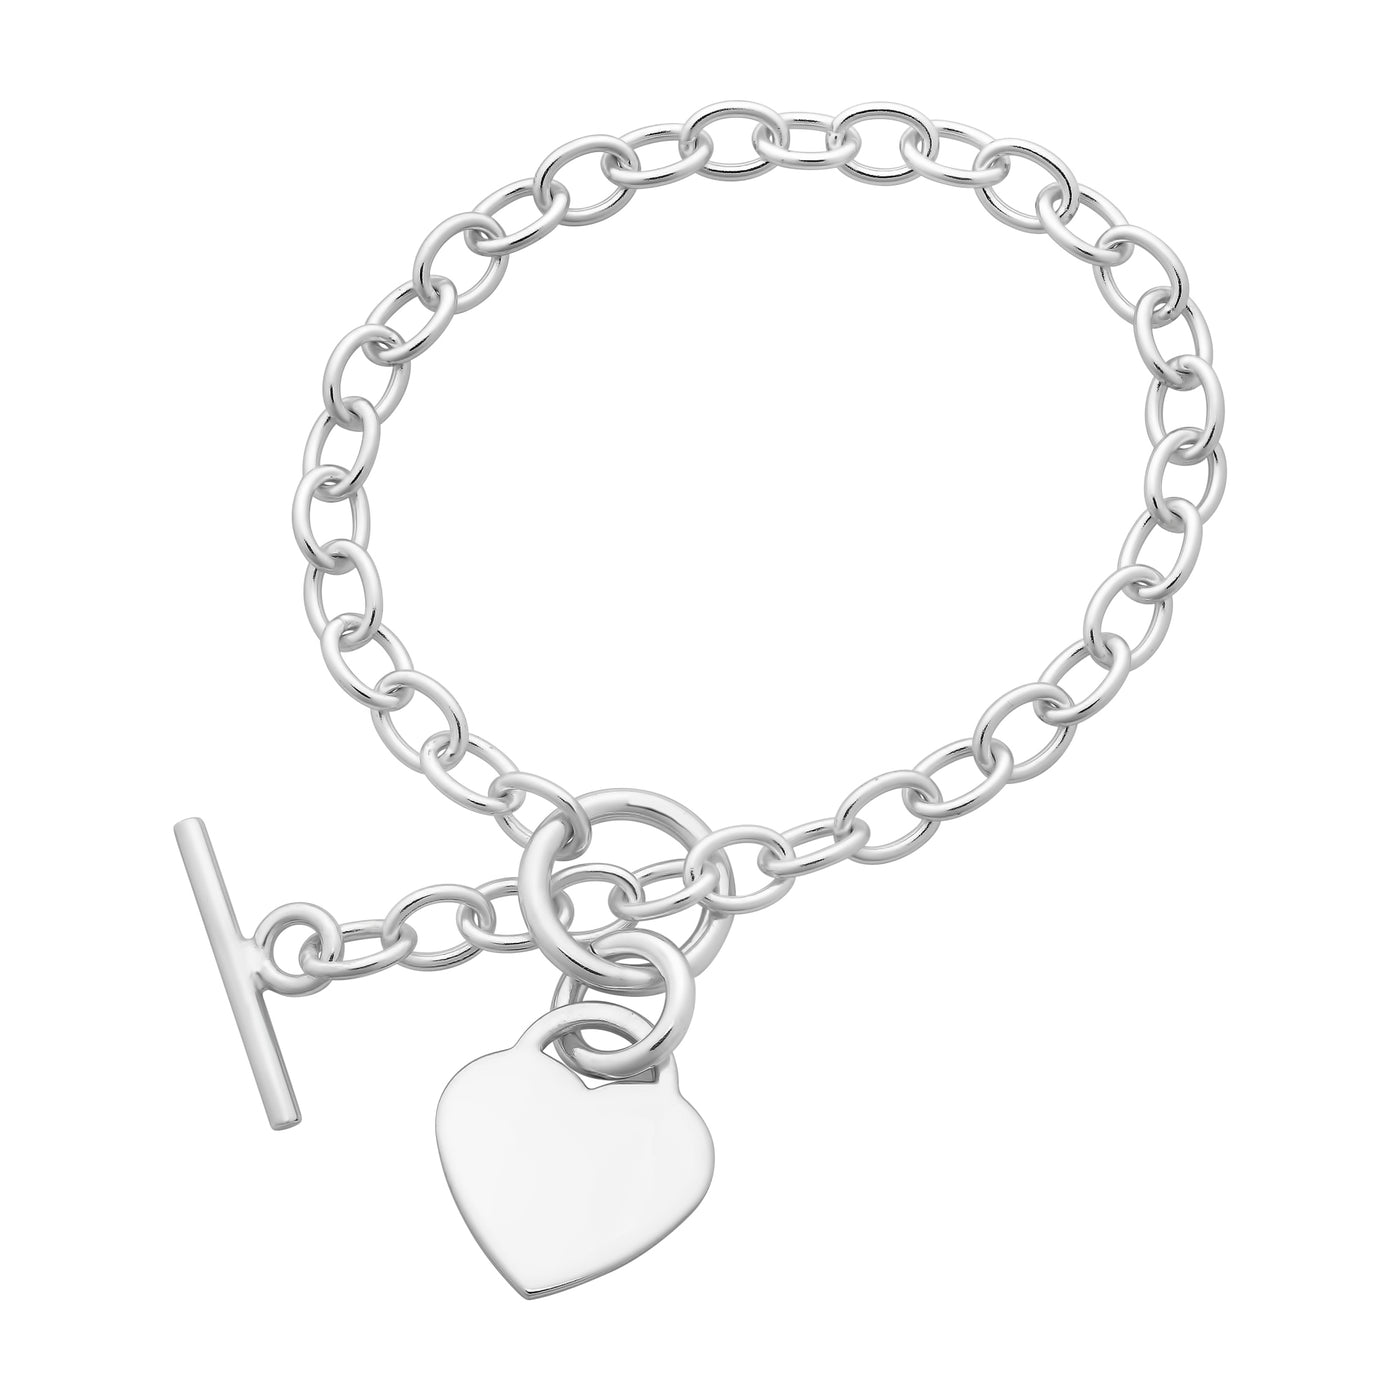 Sterling Silver T-Bar Clasp Heart Bracelet